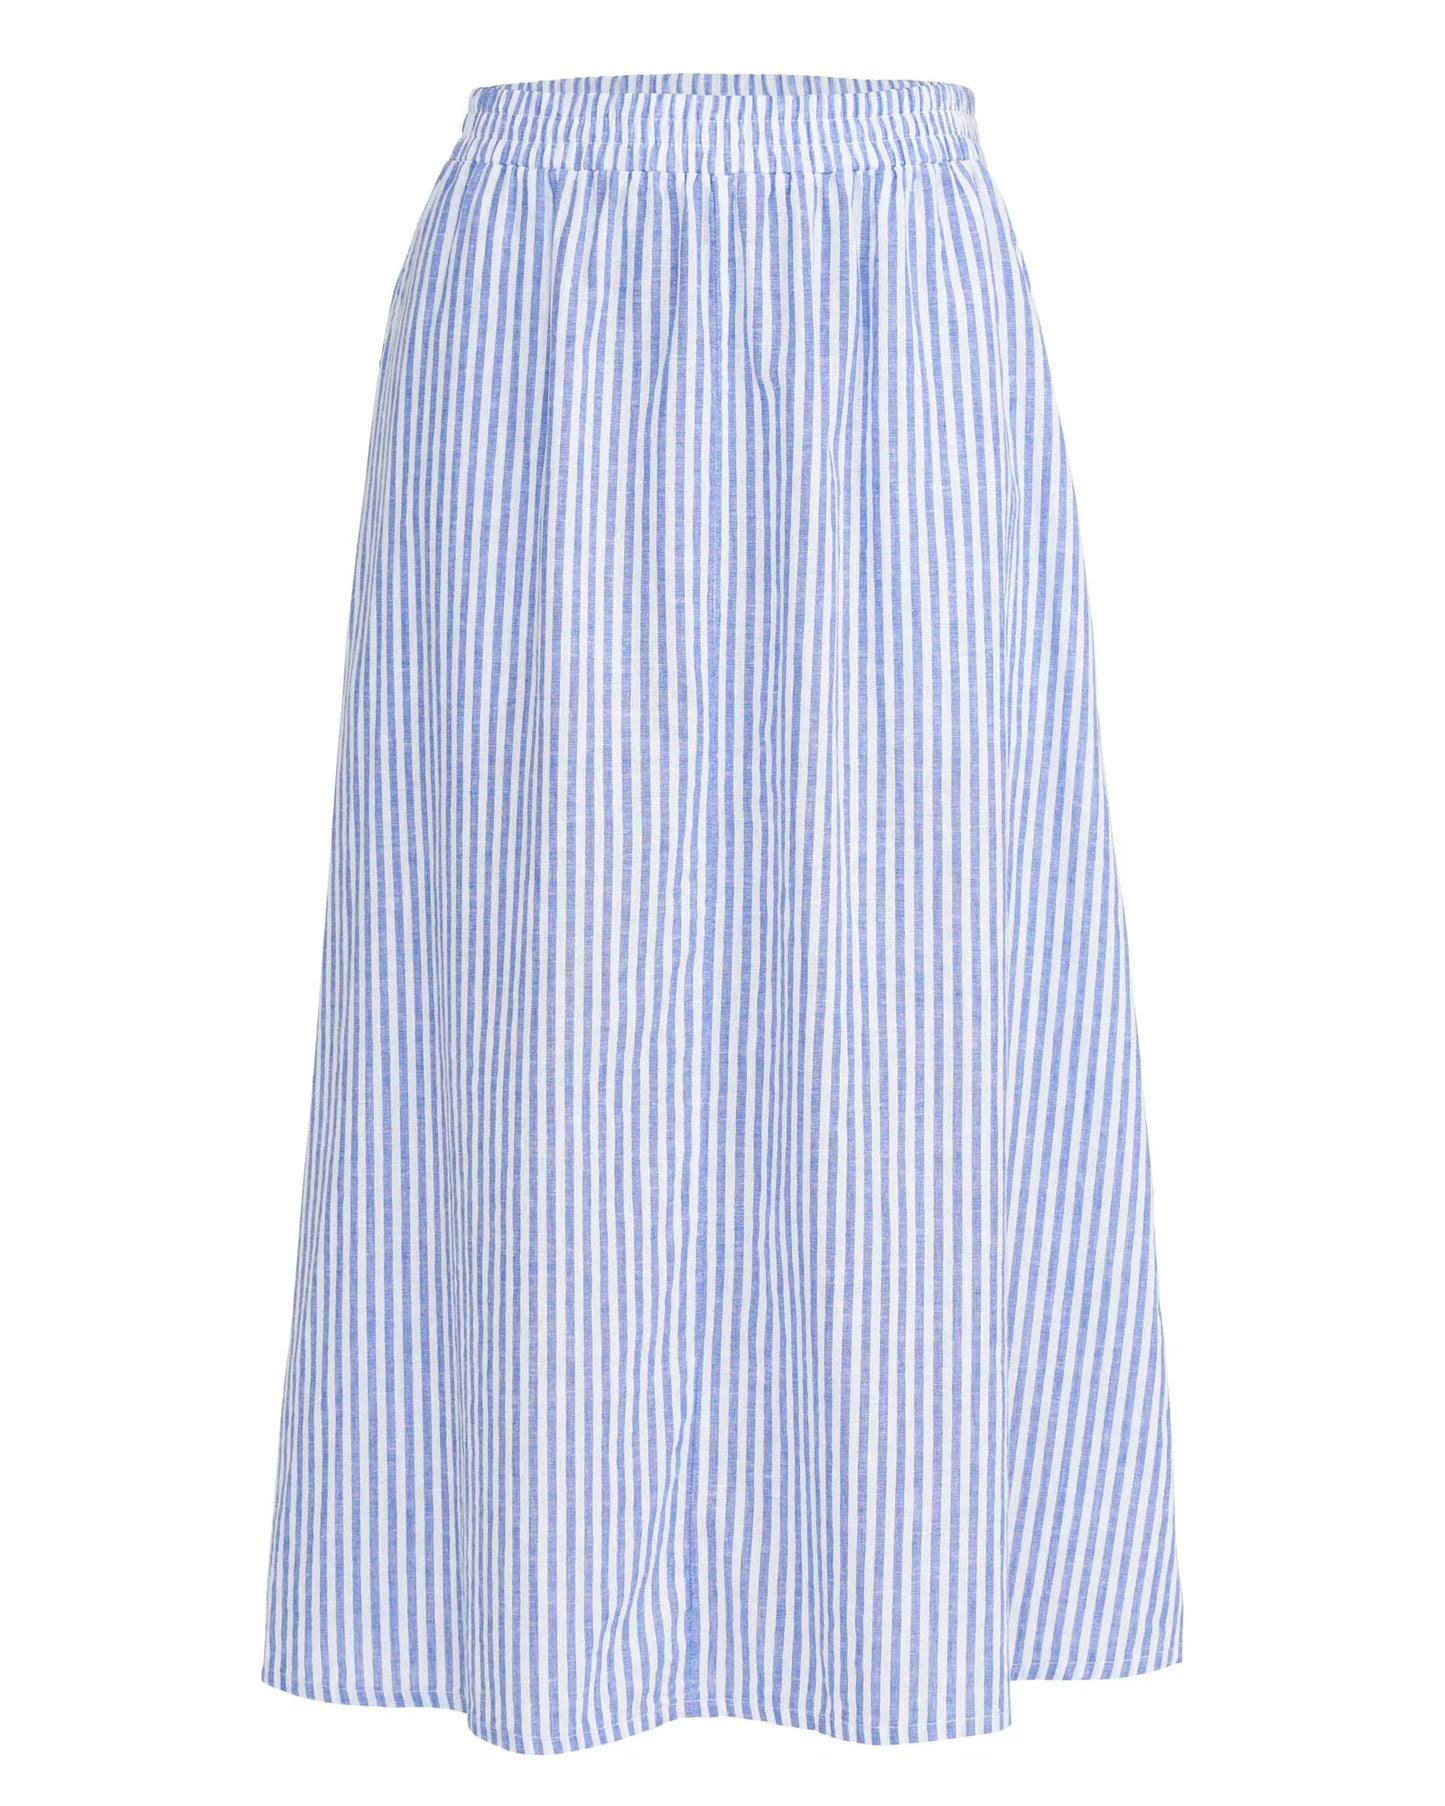 Holebrook Marina Skirt - Royal/White